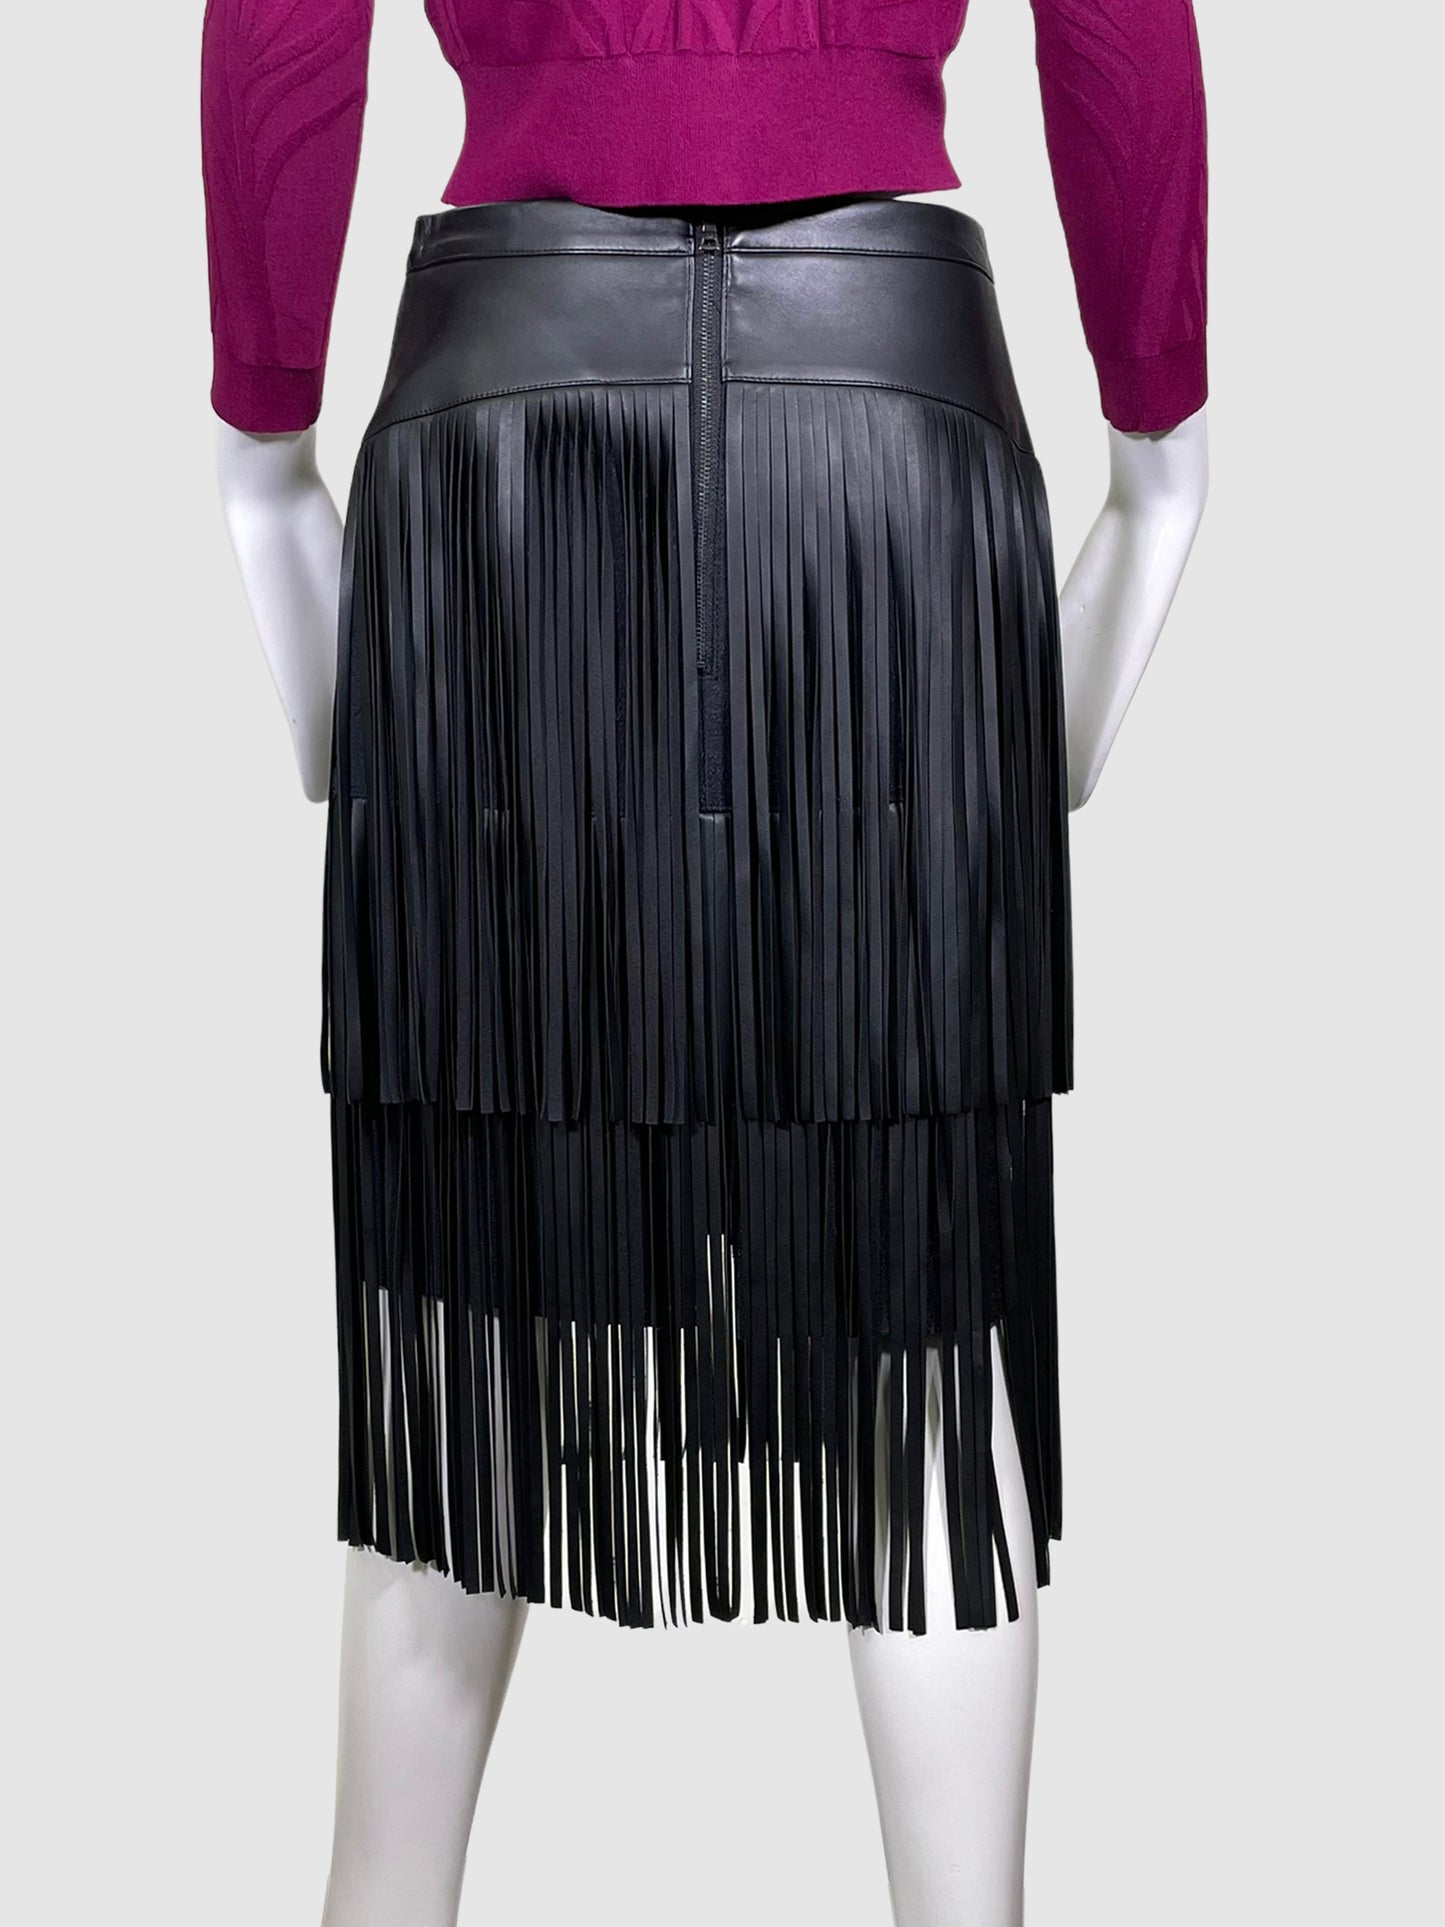 BCBG Fringed Leather Skirt - Size 4